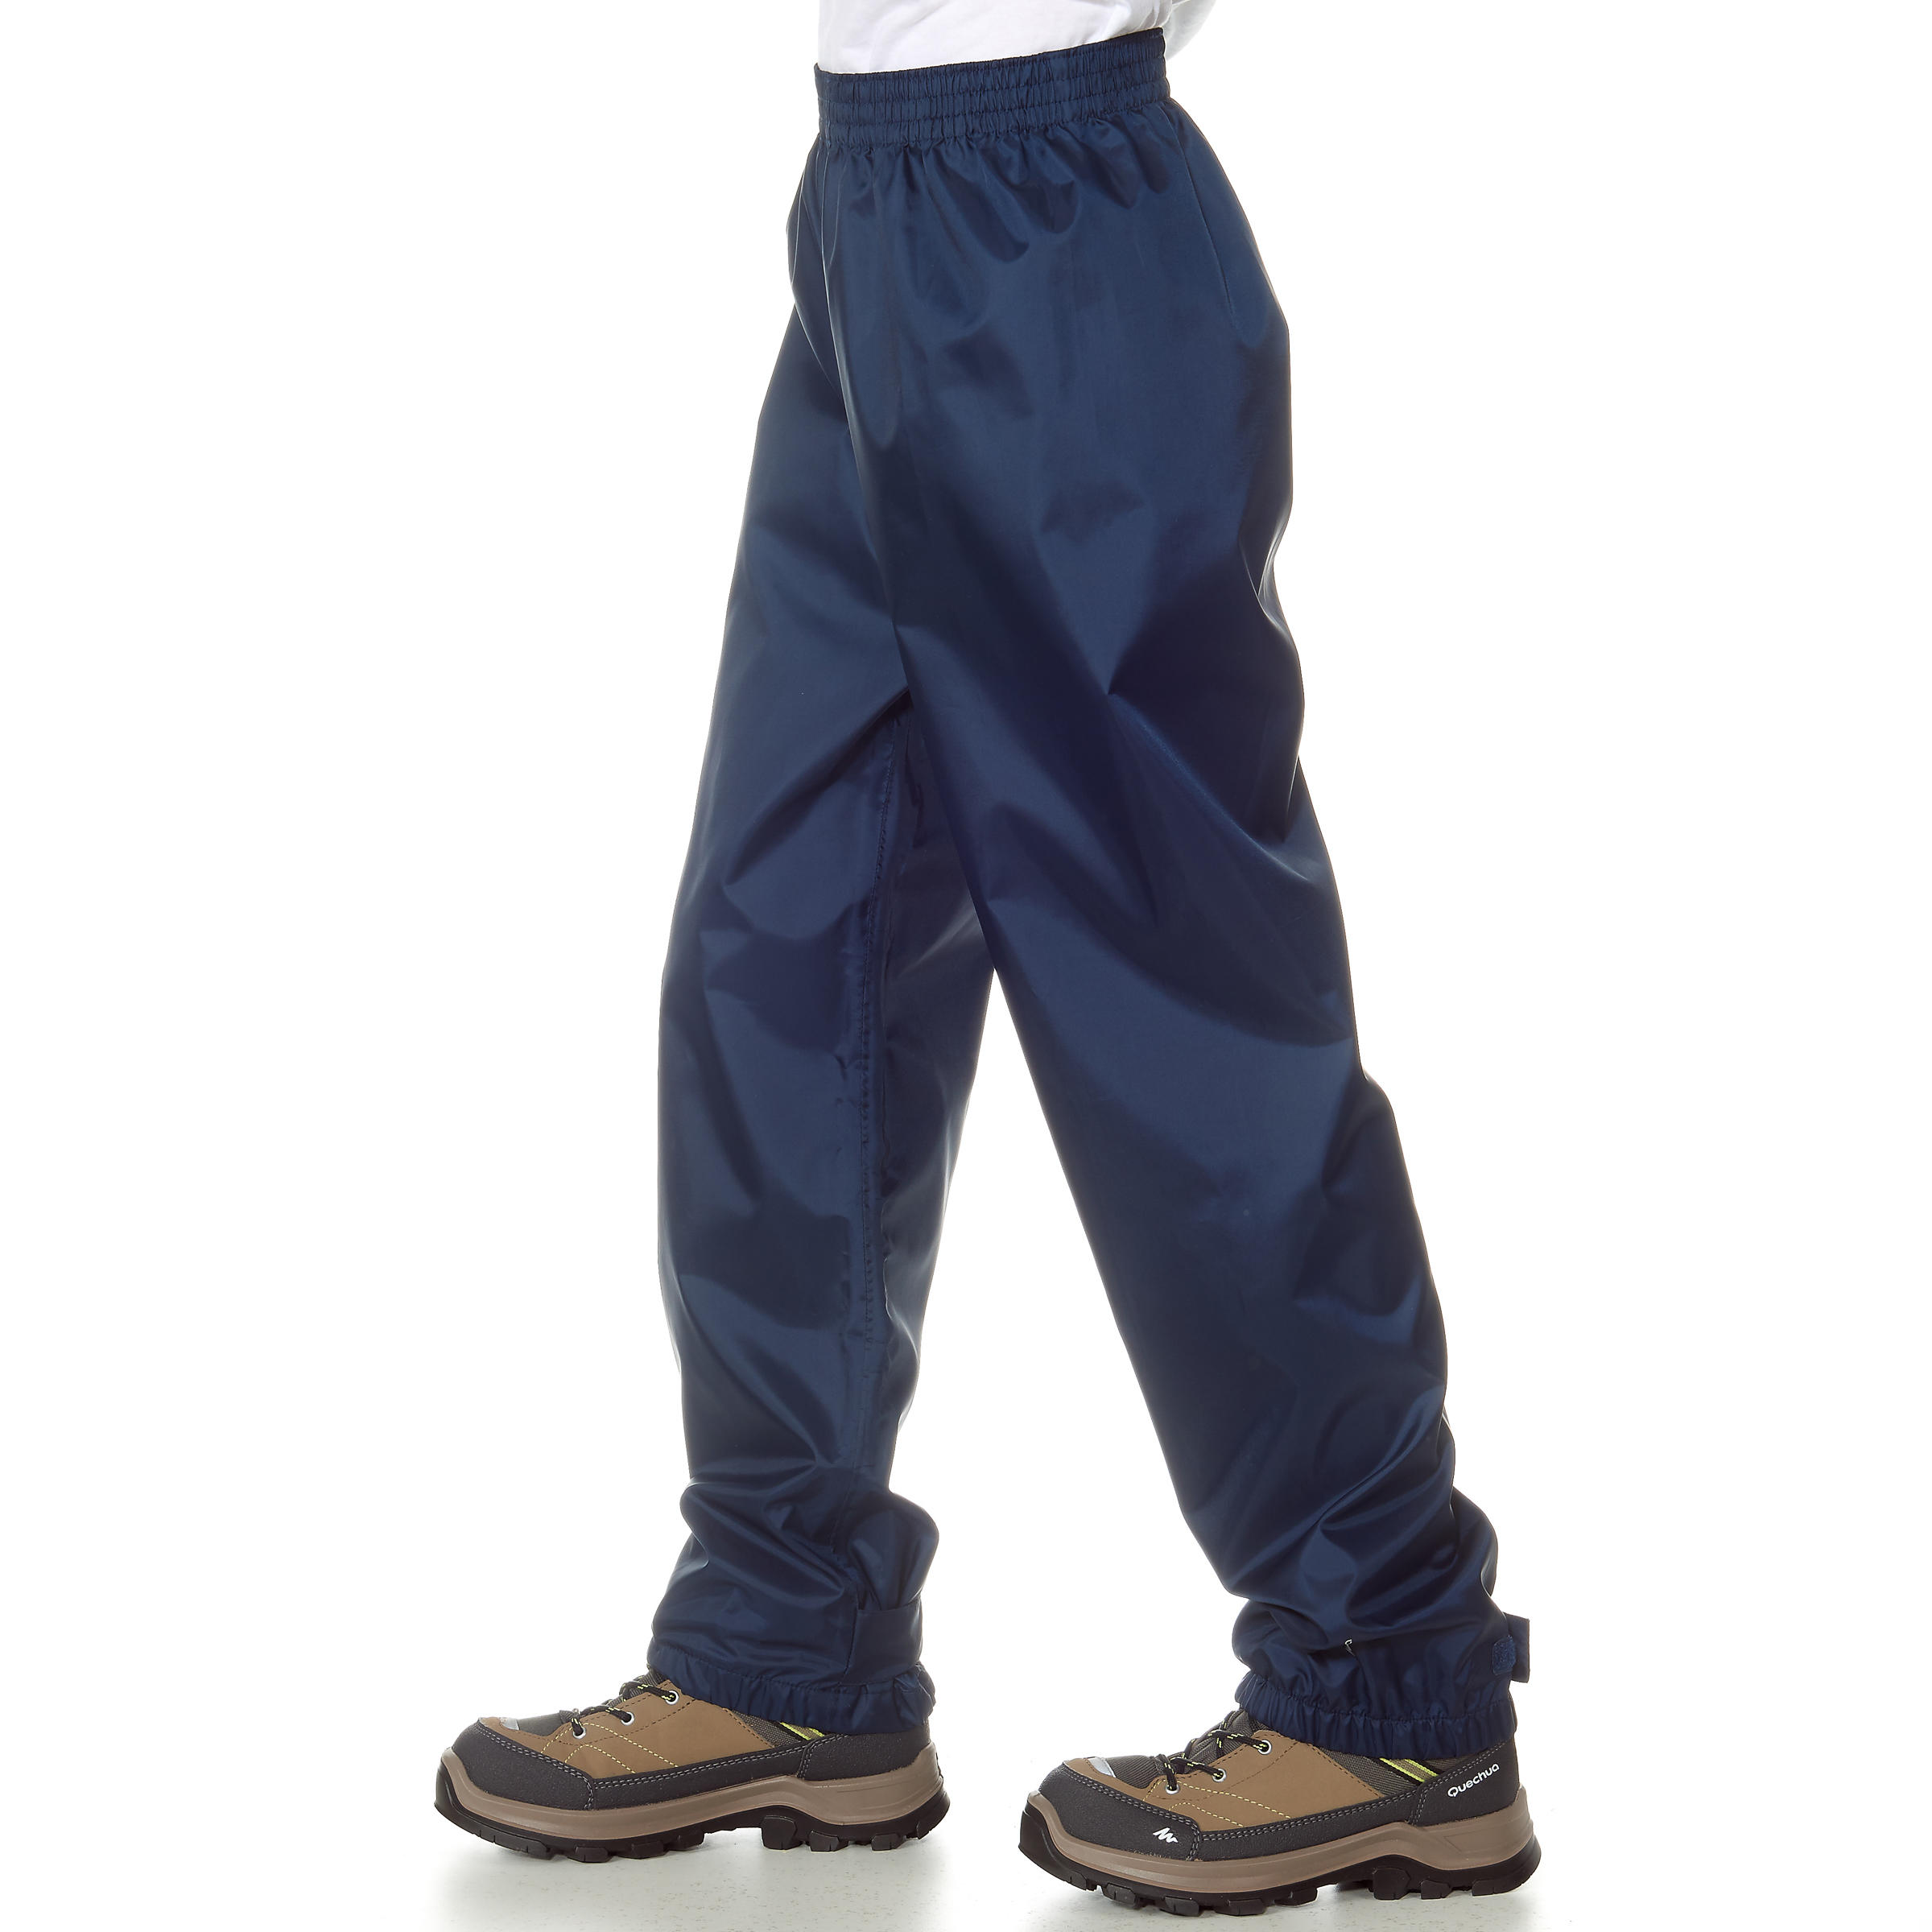 Kids’ Hiking Rain Pants - MH 100 Blue - Dark blue - Quechua - Decathlon